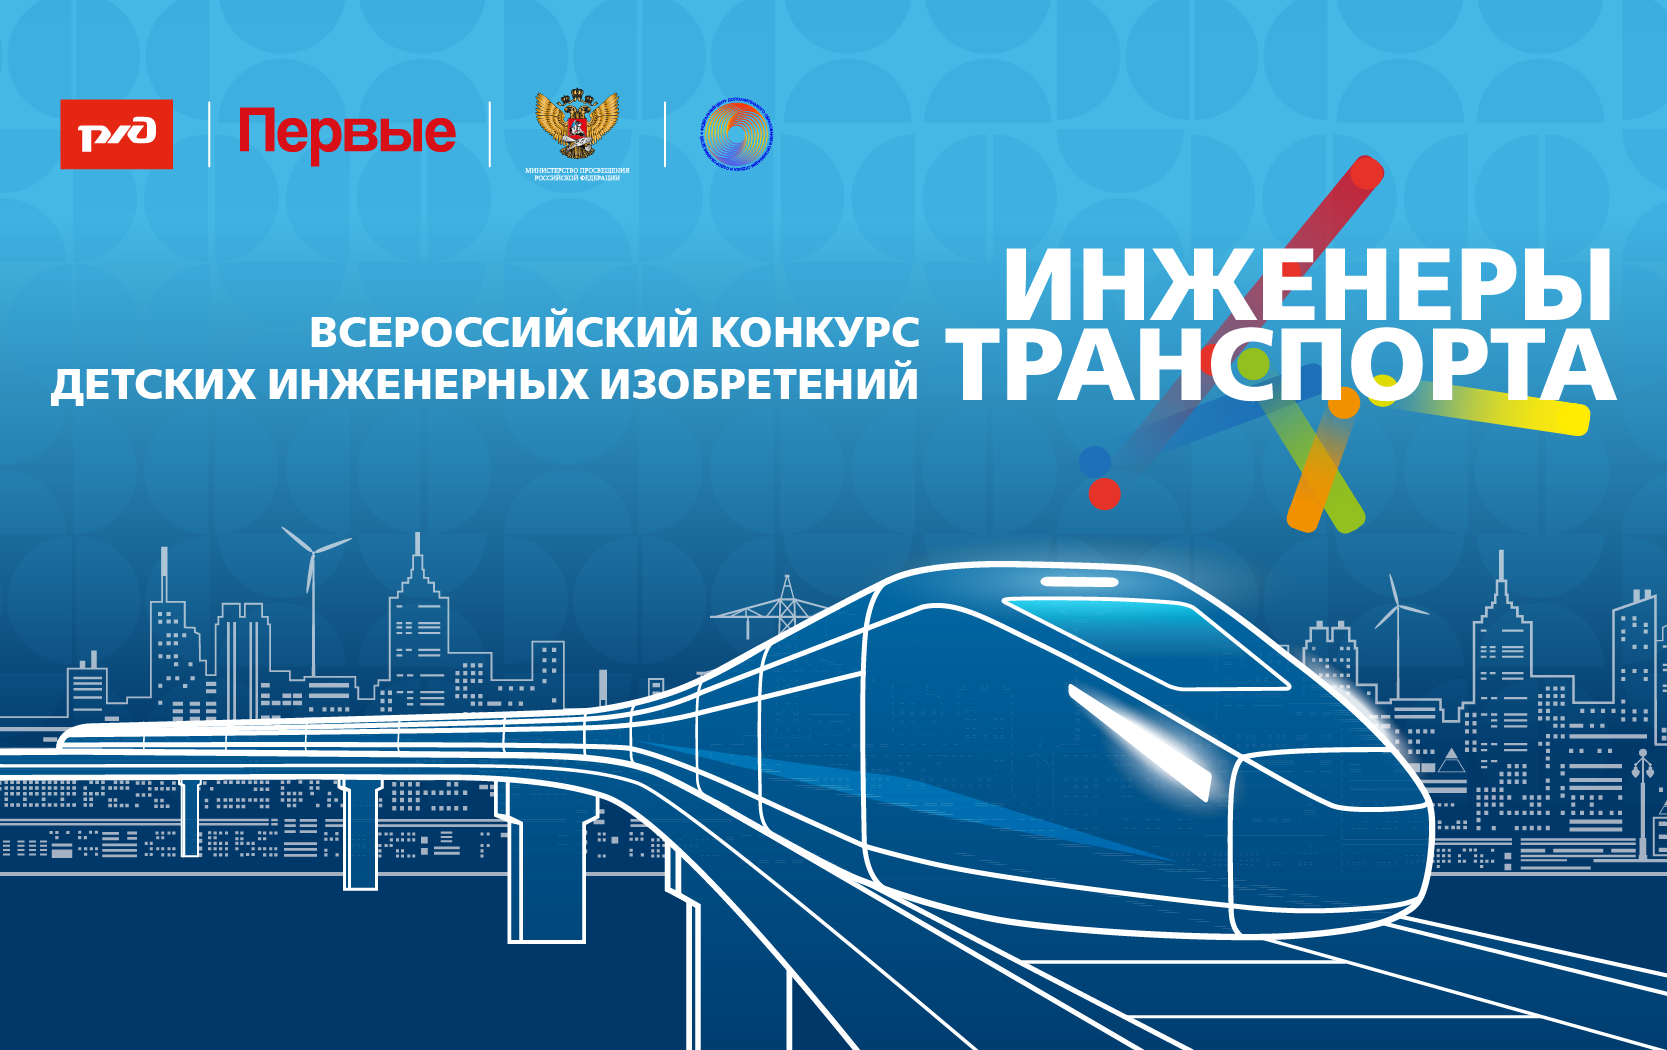 Всероссийский конкурс детских инженерных изобретений «Инженеры транспорта»